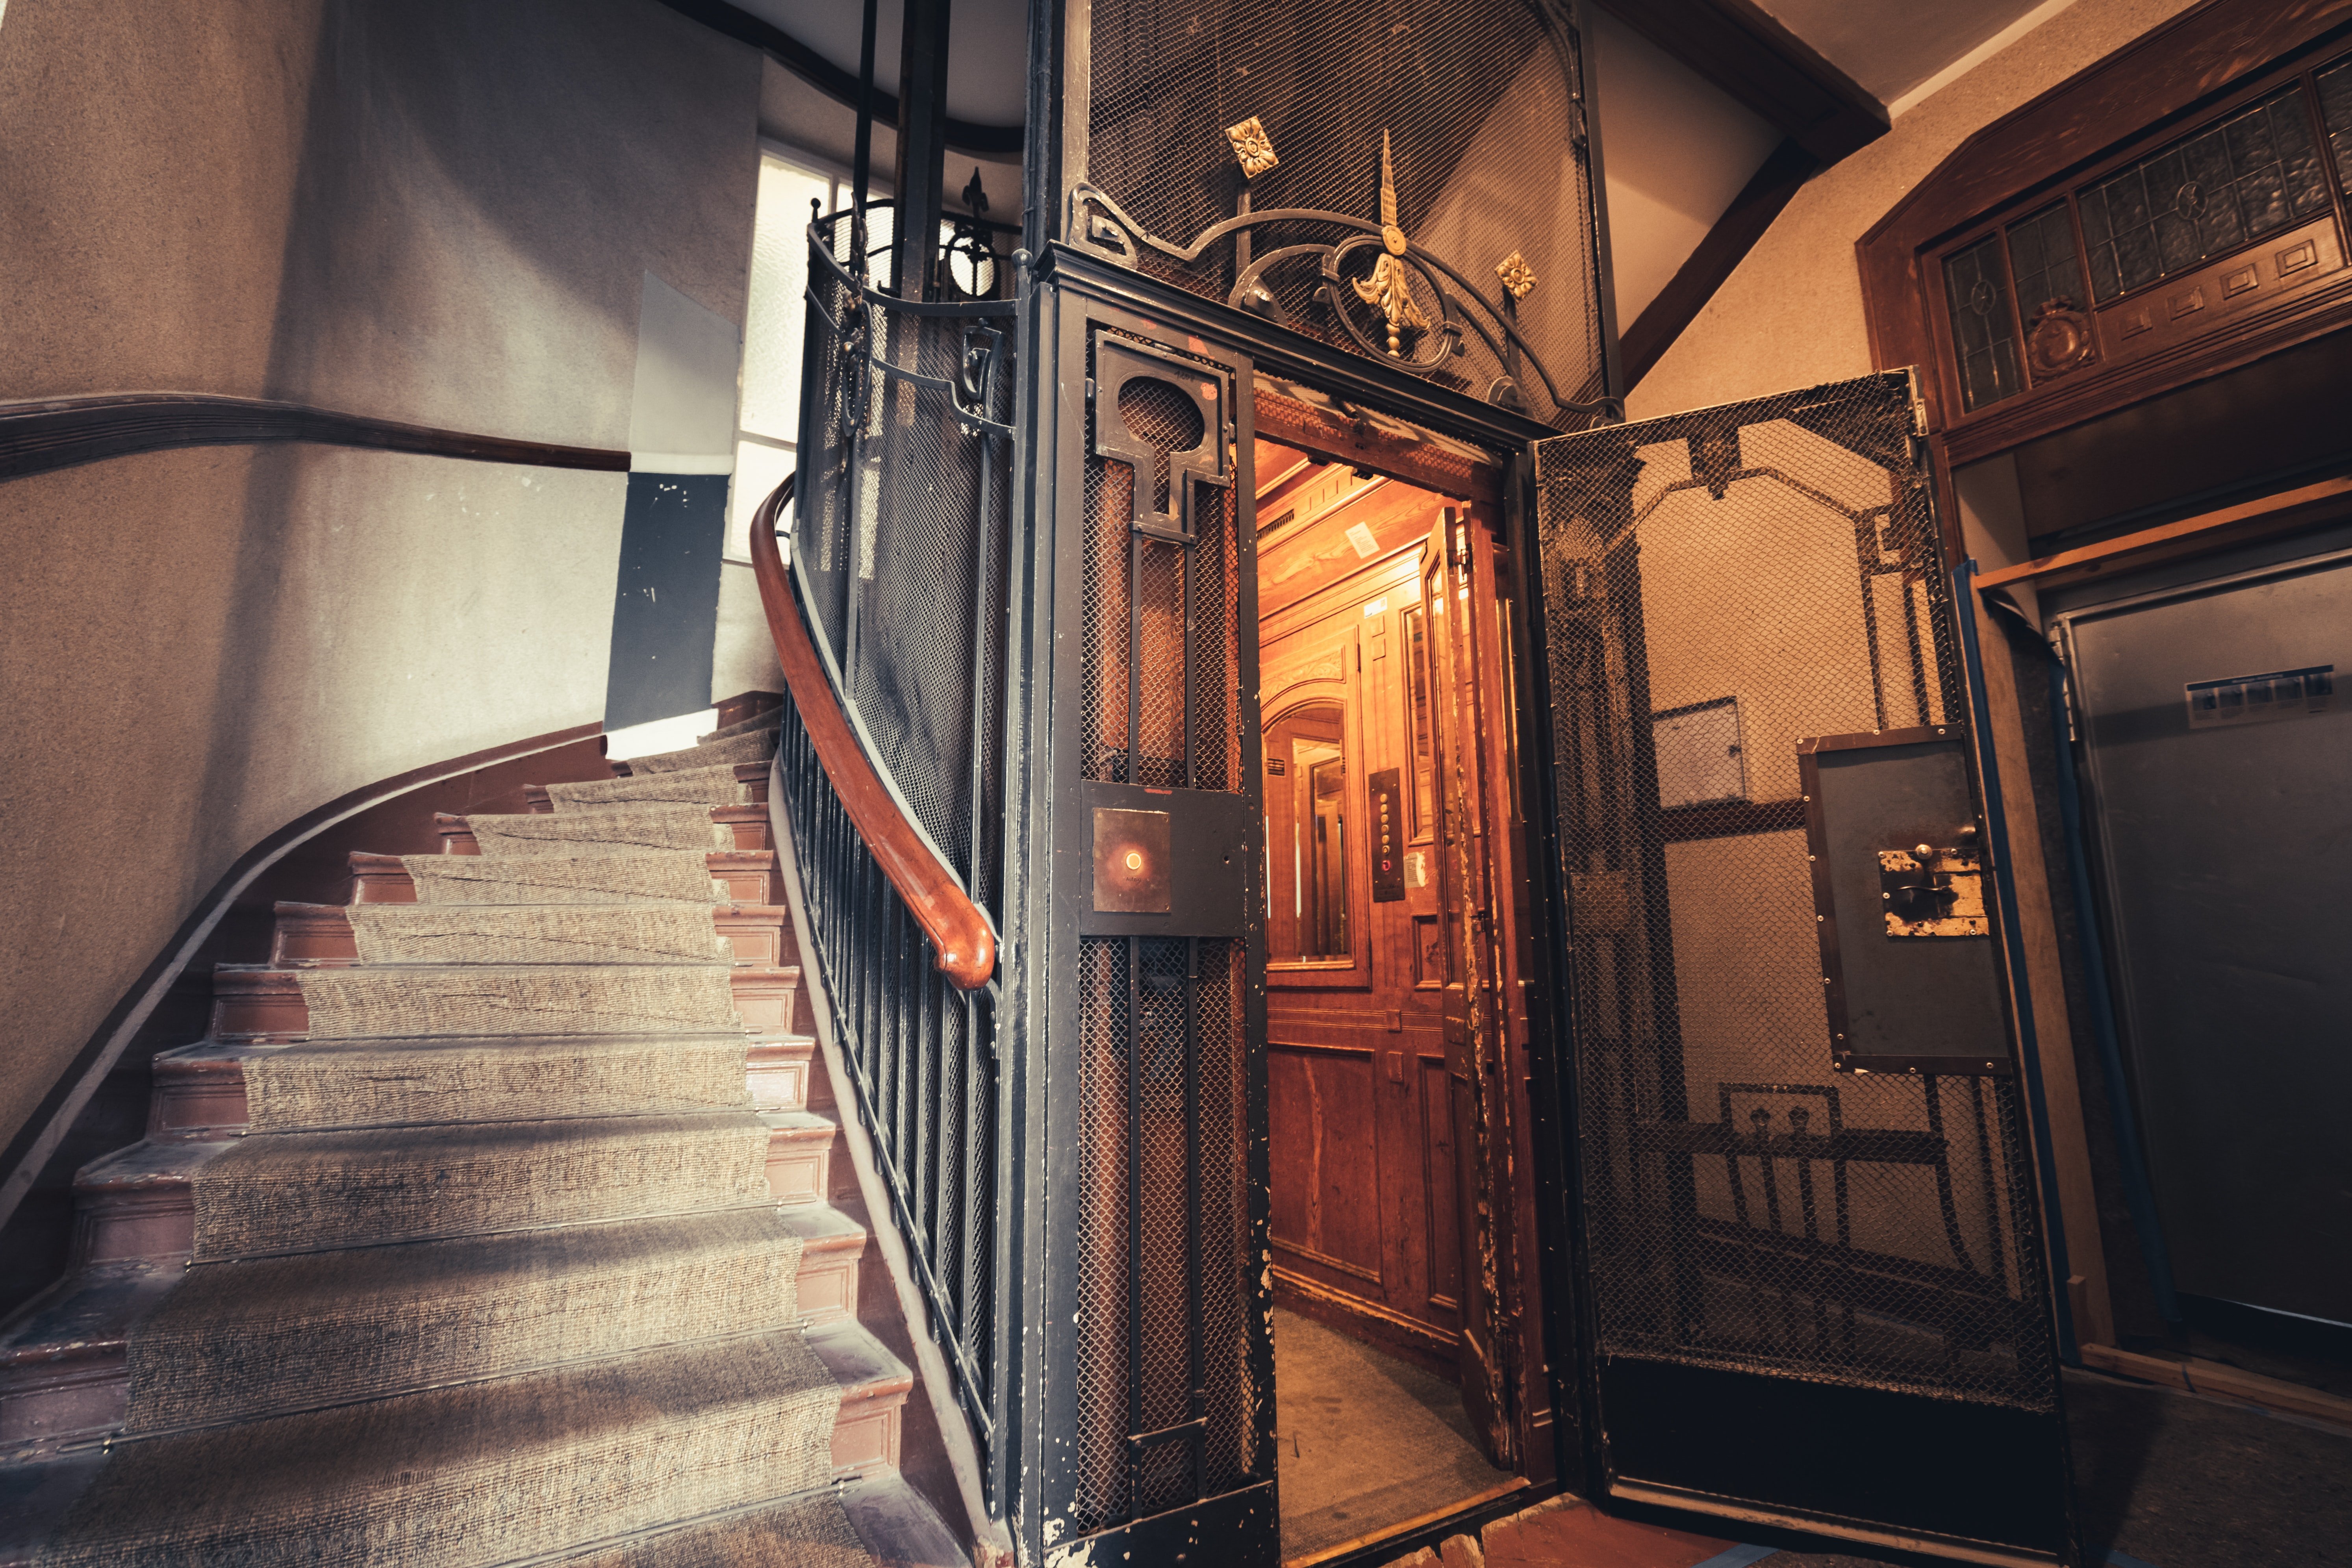 Ascensor y escaleras de un antiguo edificio. | Foto: Unsplash